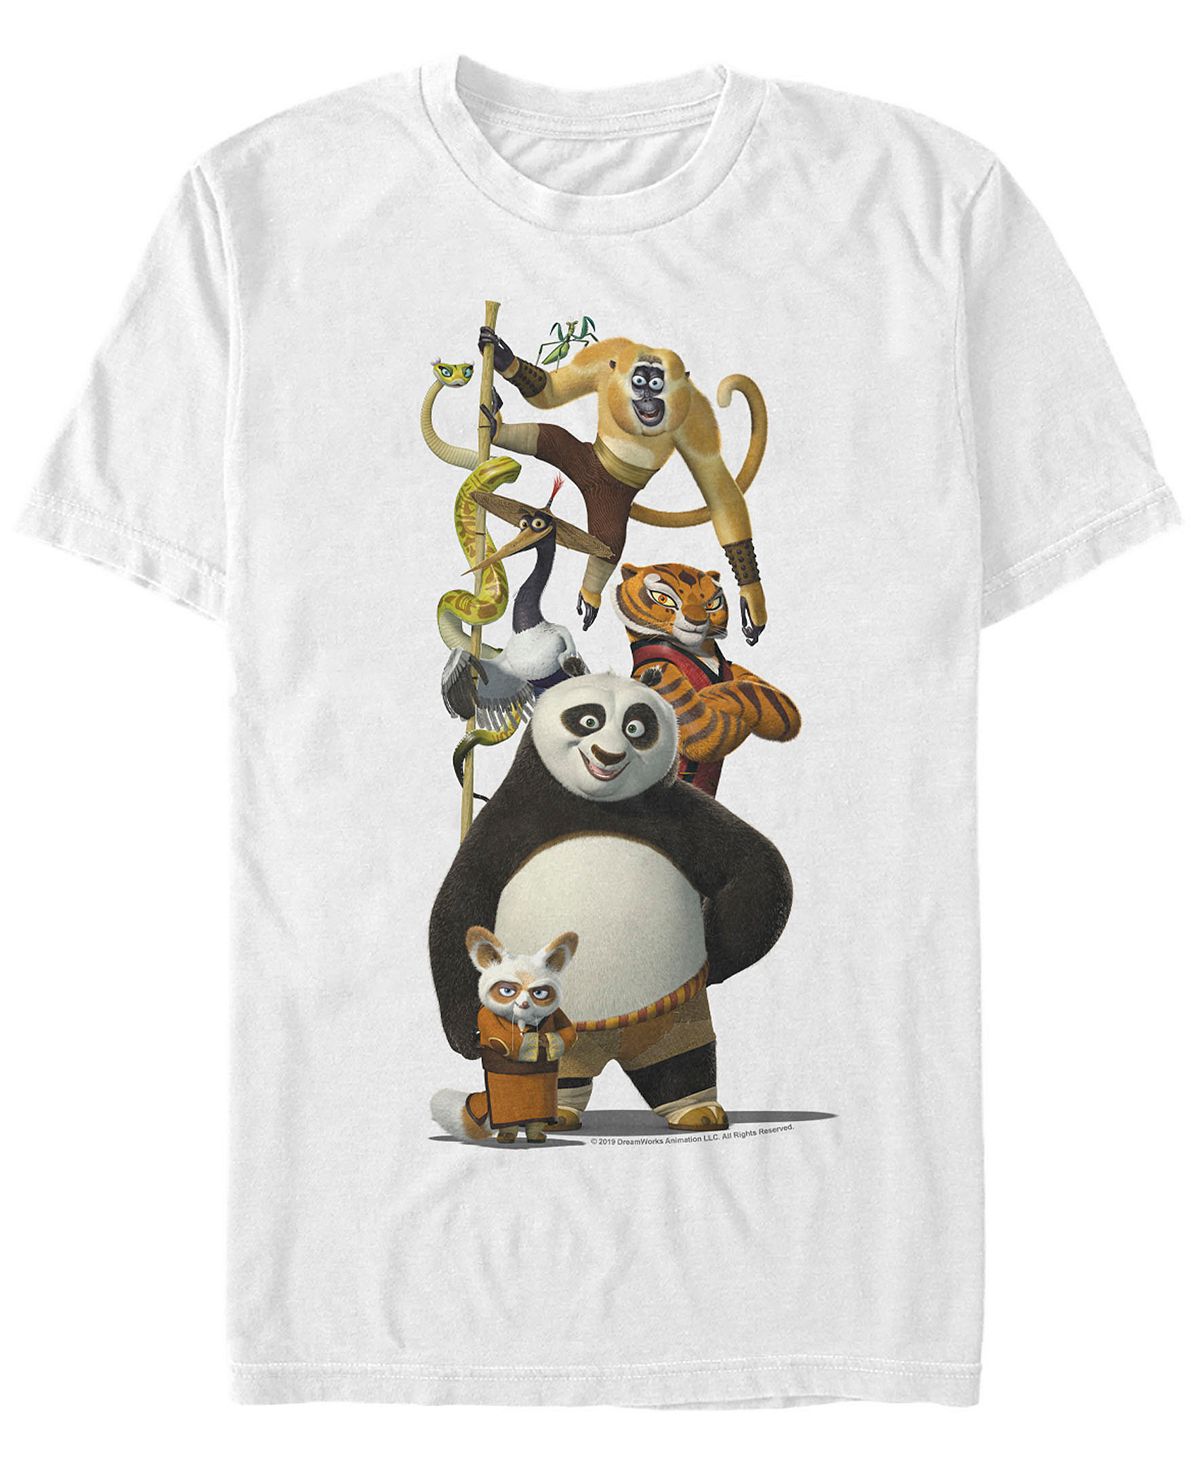 Мужская футболка с короткими рукавами по и друзья кунг-фу панда Fifth Sun, белый кунг фу панда 3 blu ray 3d